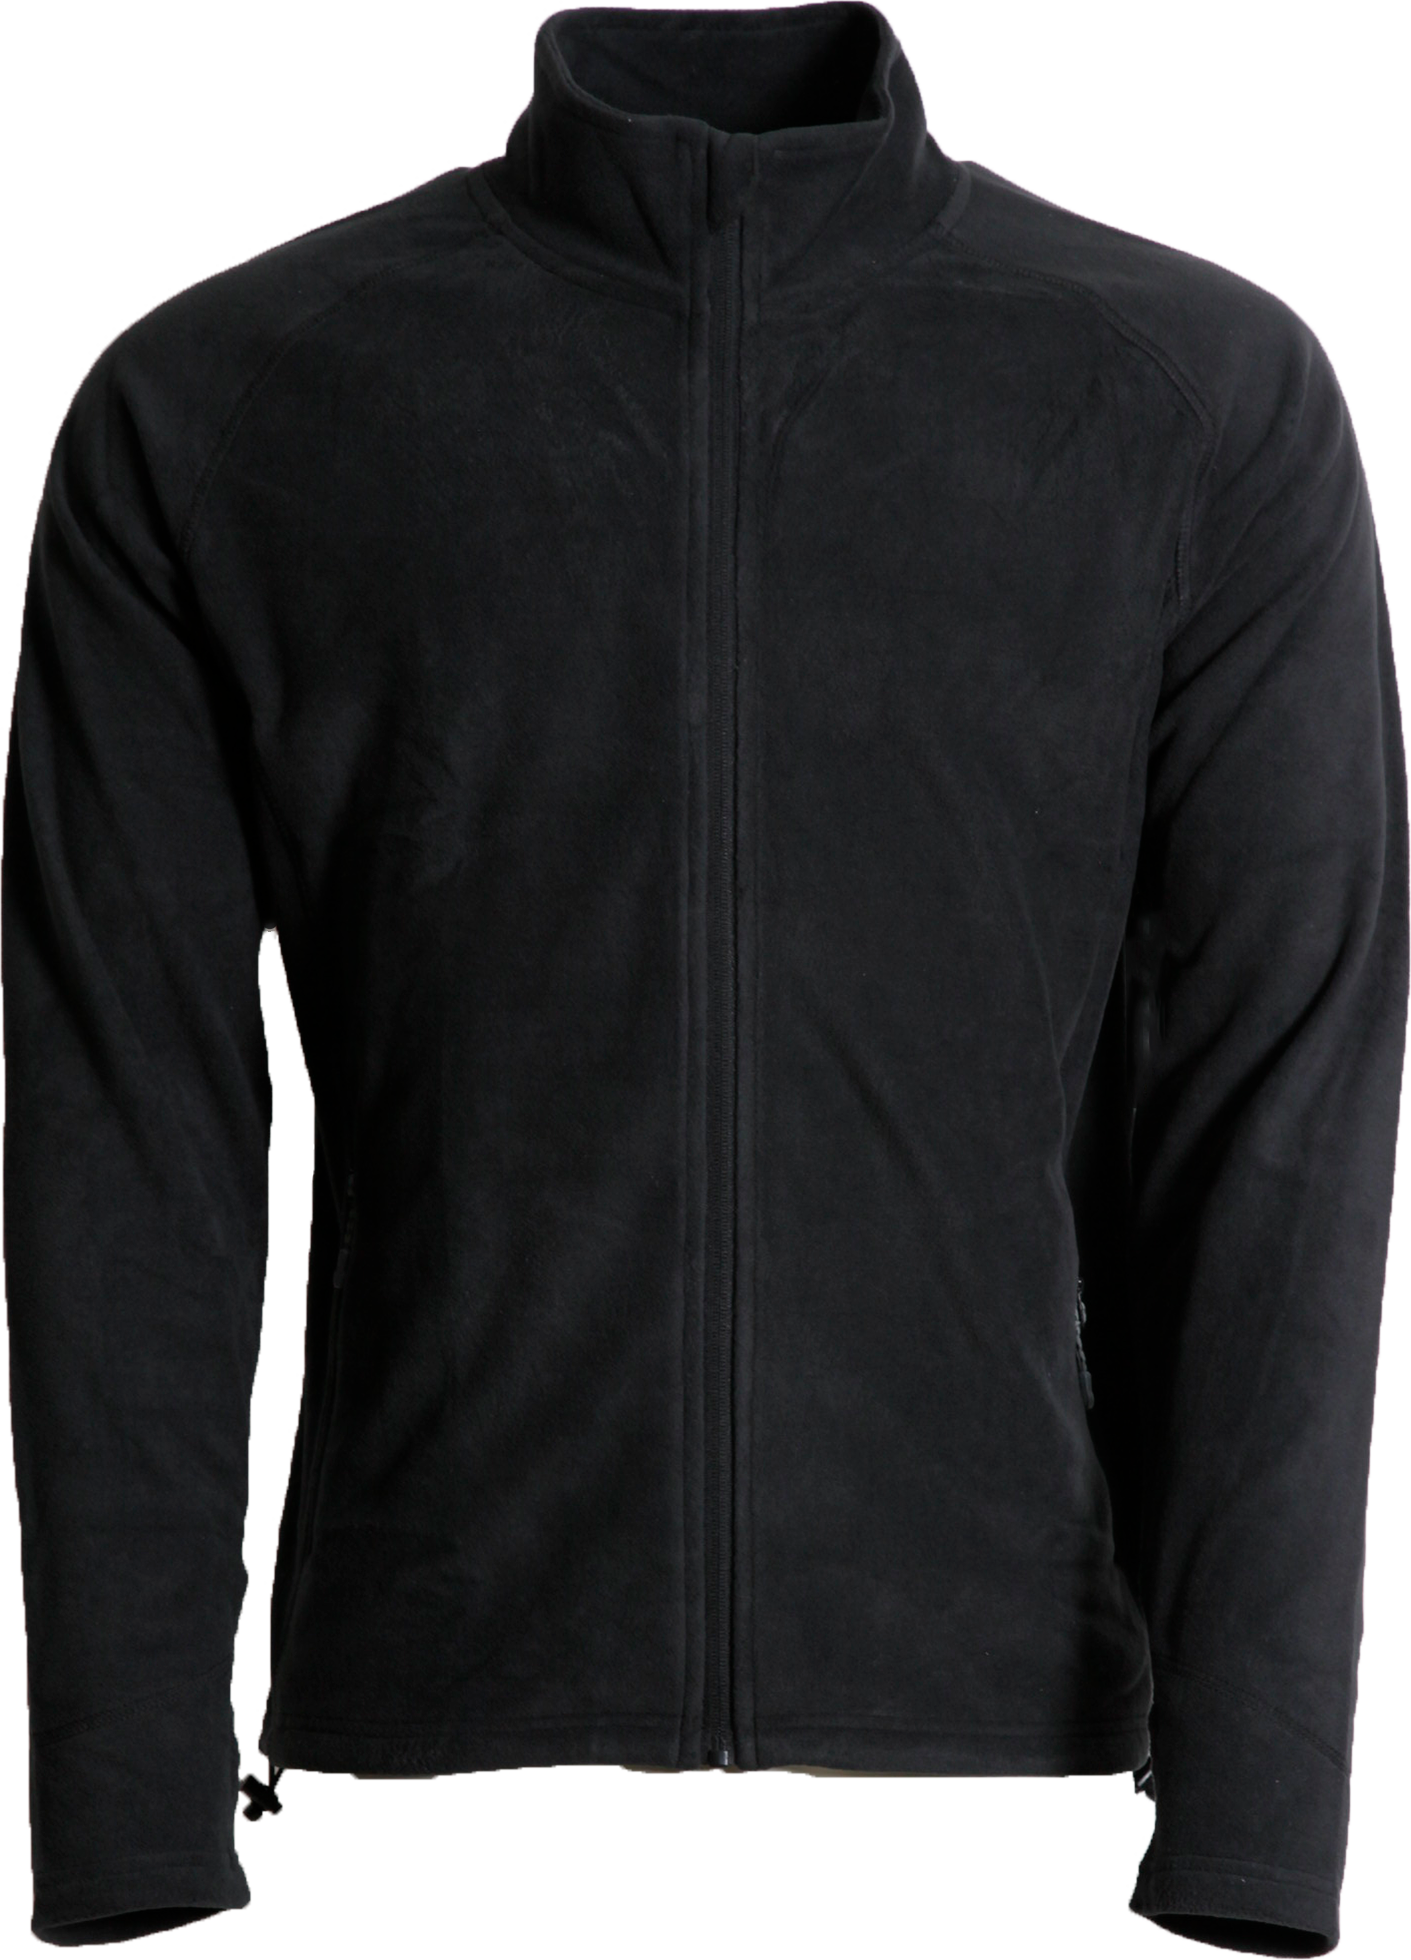 Dobsom Women’s Pescara Fleece Jacket Black